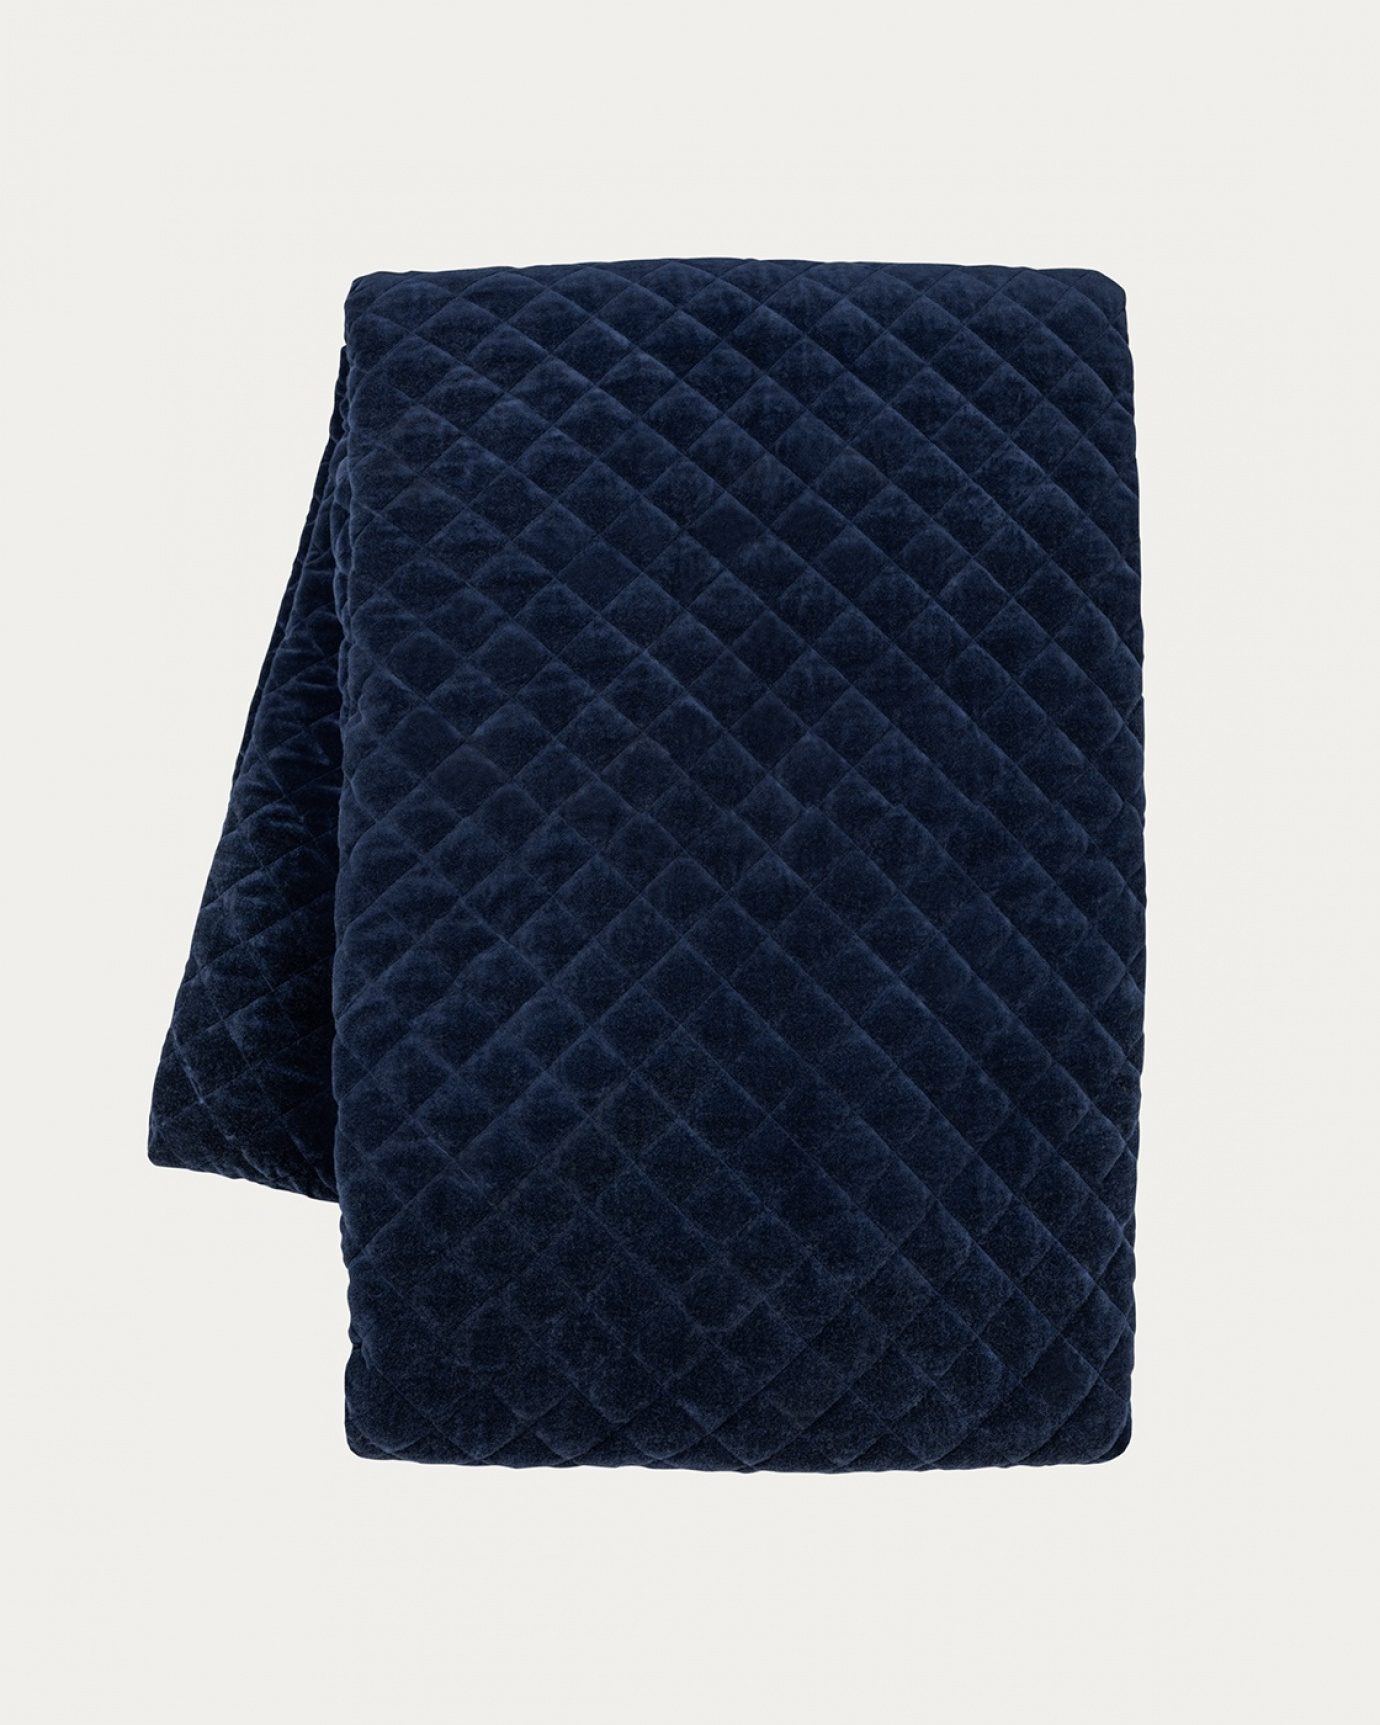 Image du produit couvre-lit PICCOLO bleu outre mer en velours de coton doux pour lit simple de LINUM DESIGN. Taille 170 x 260 cm.